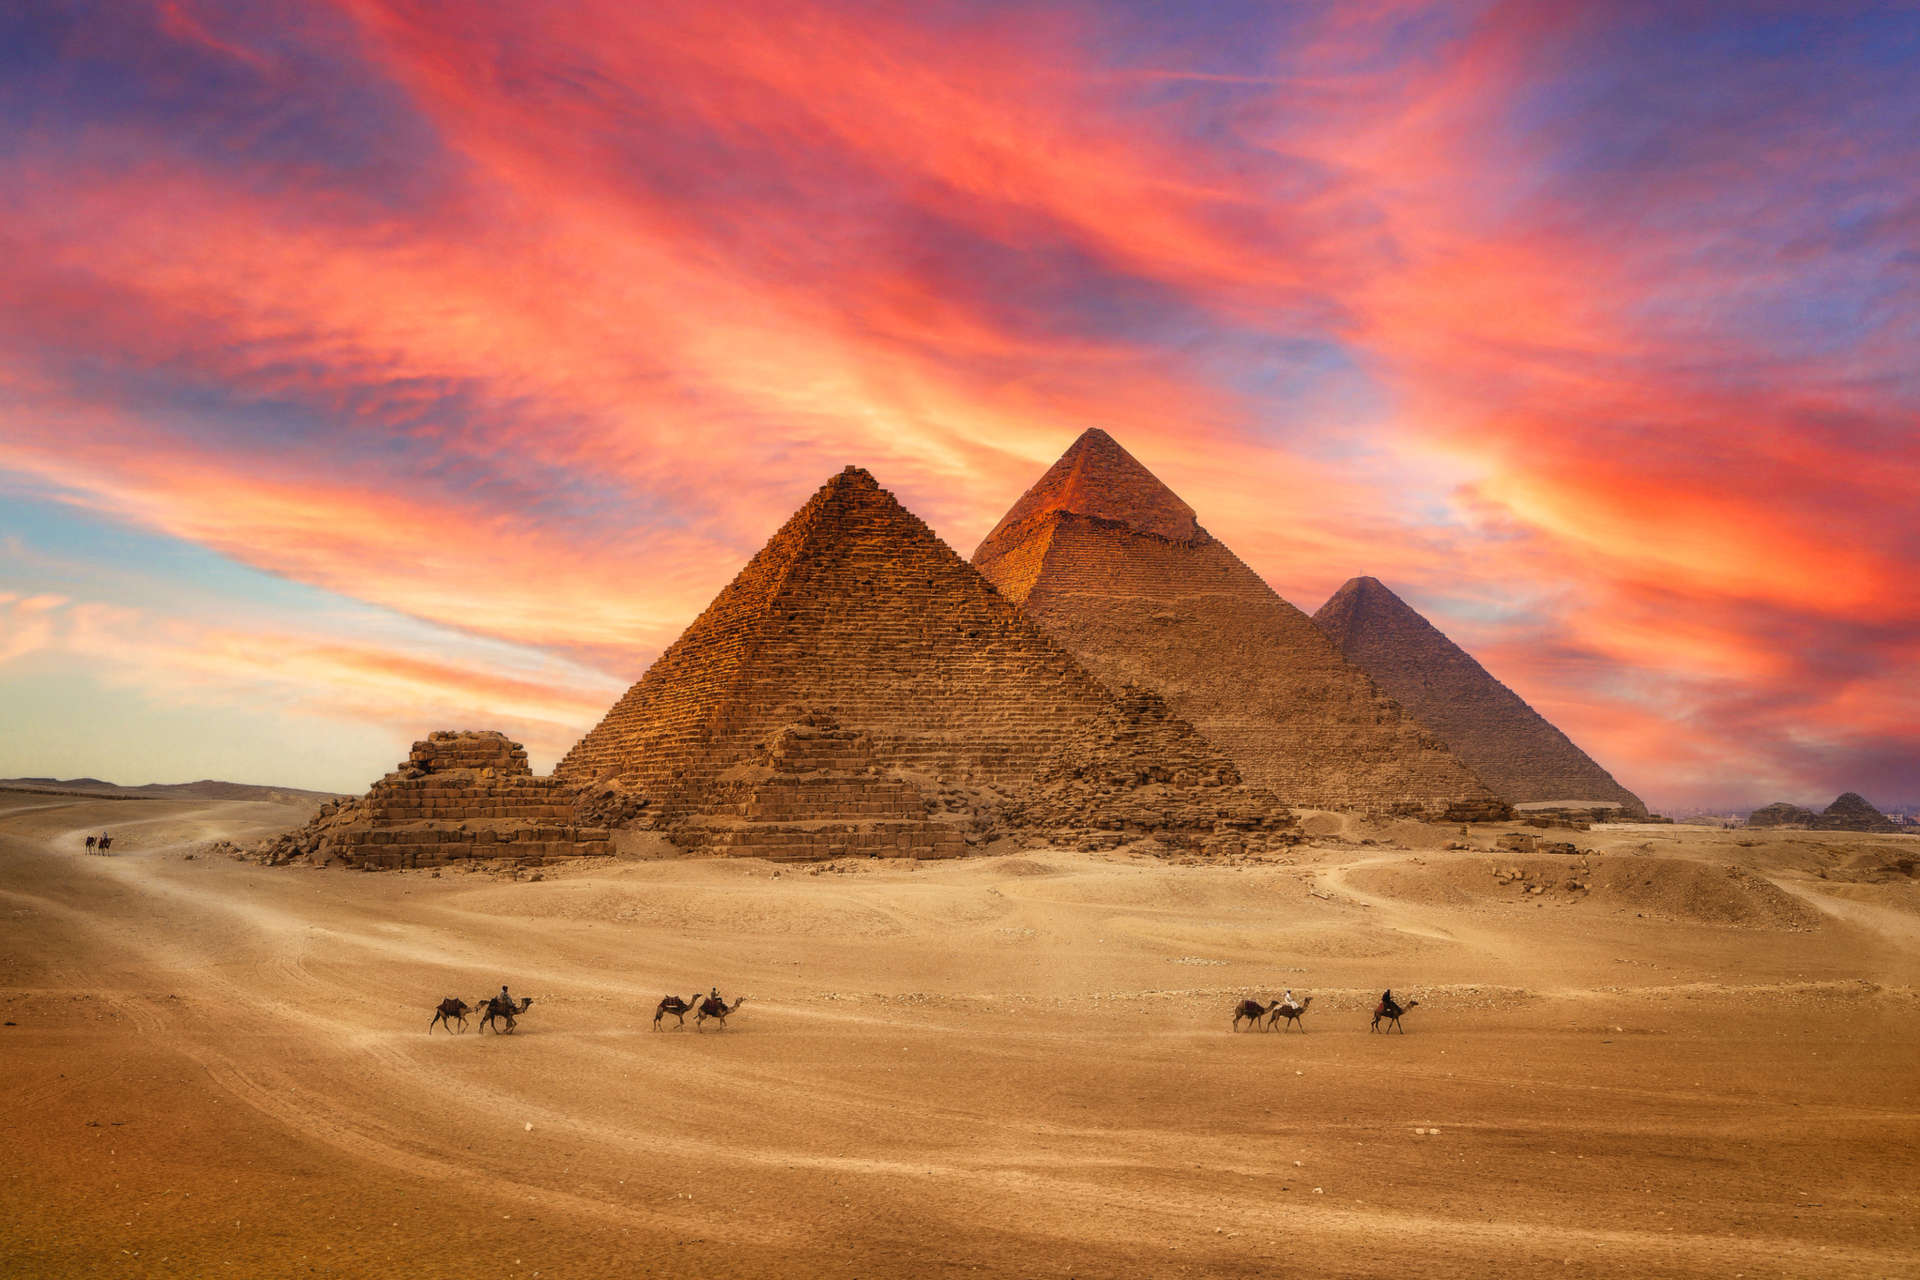 يشهد شهر نوفمبر في مصر ليالي باردة وصباحًا مشمسًا دافئًا، ويمنحك فرصة مثالية لاستكشاف بعضِ من أعظم المعالم الأثرية في العالم بأثره.